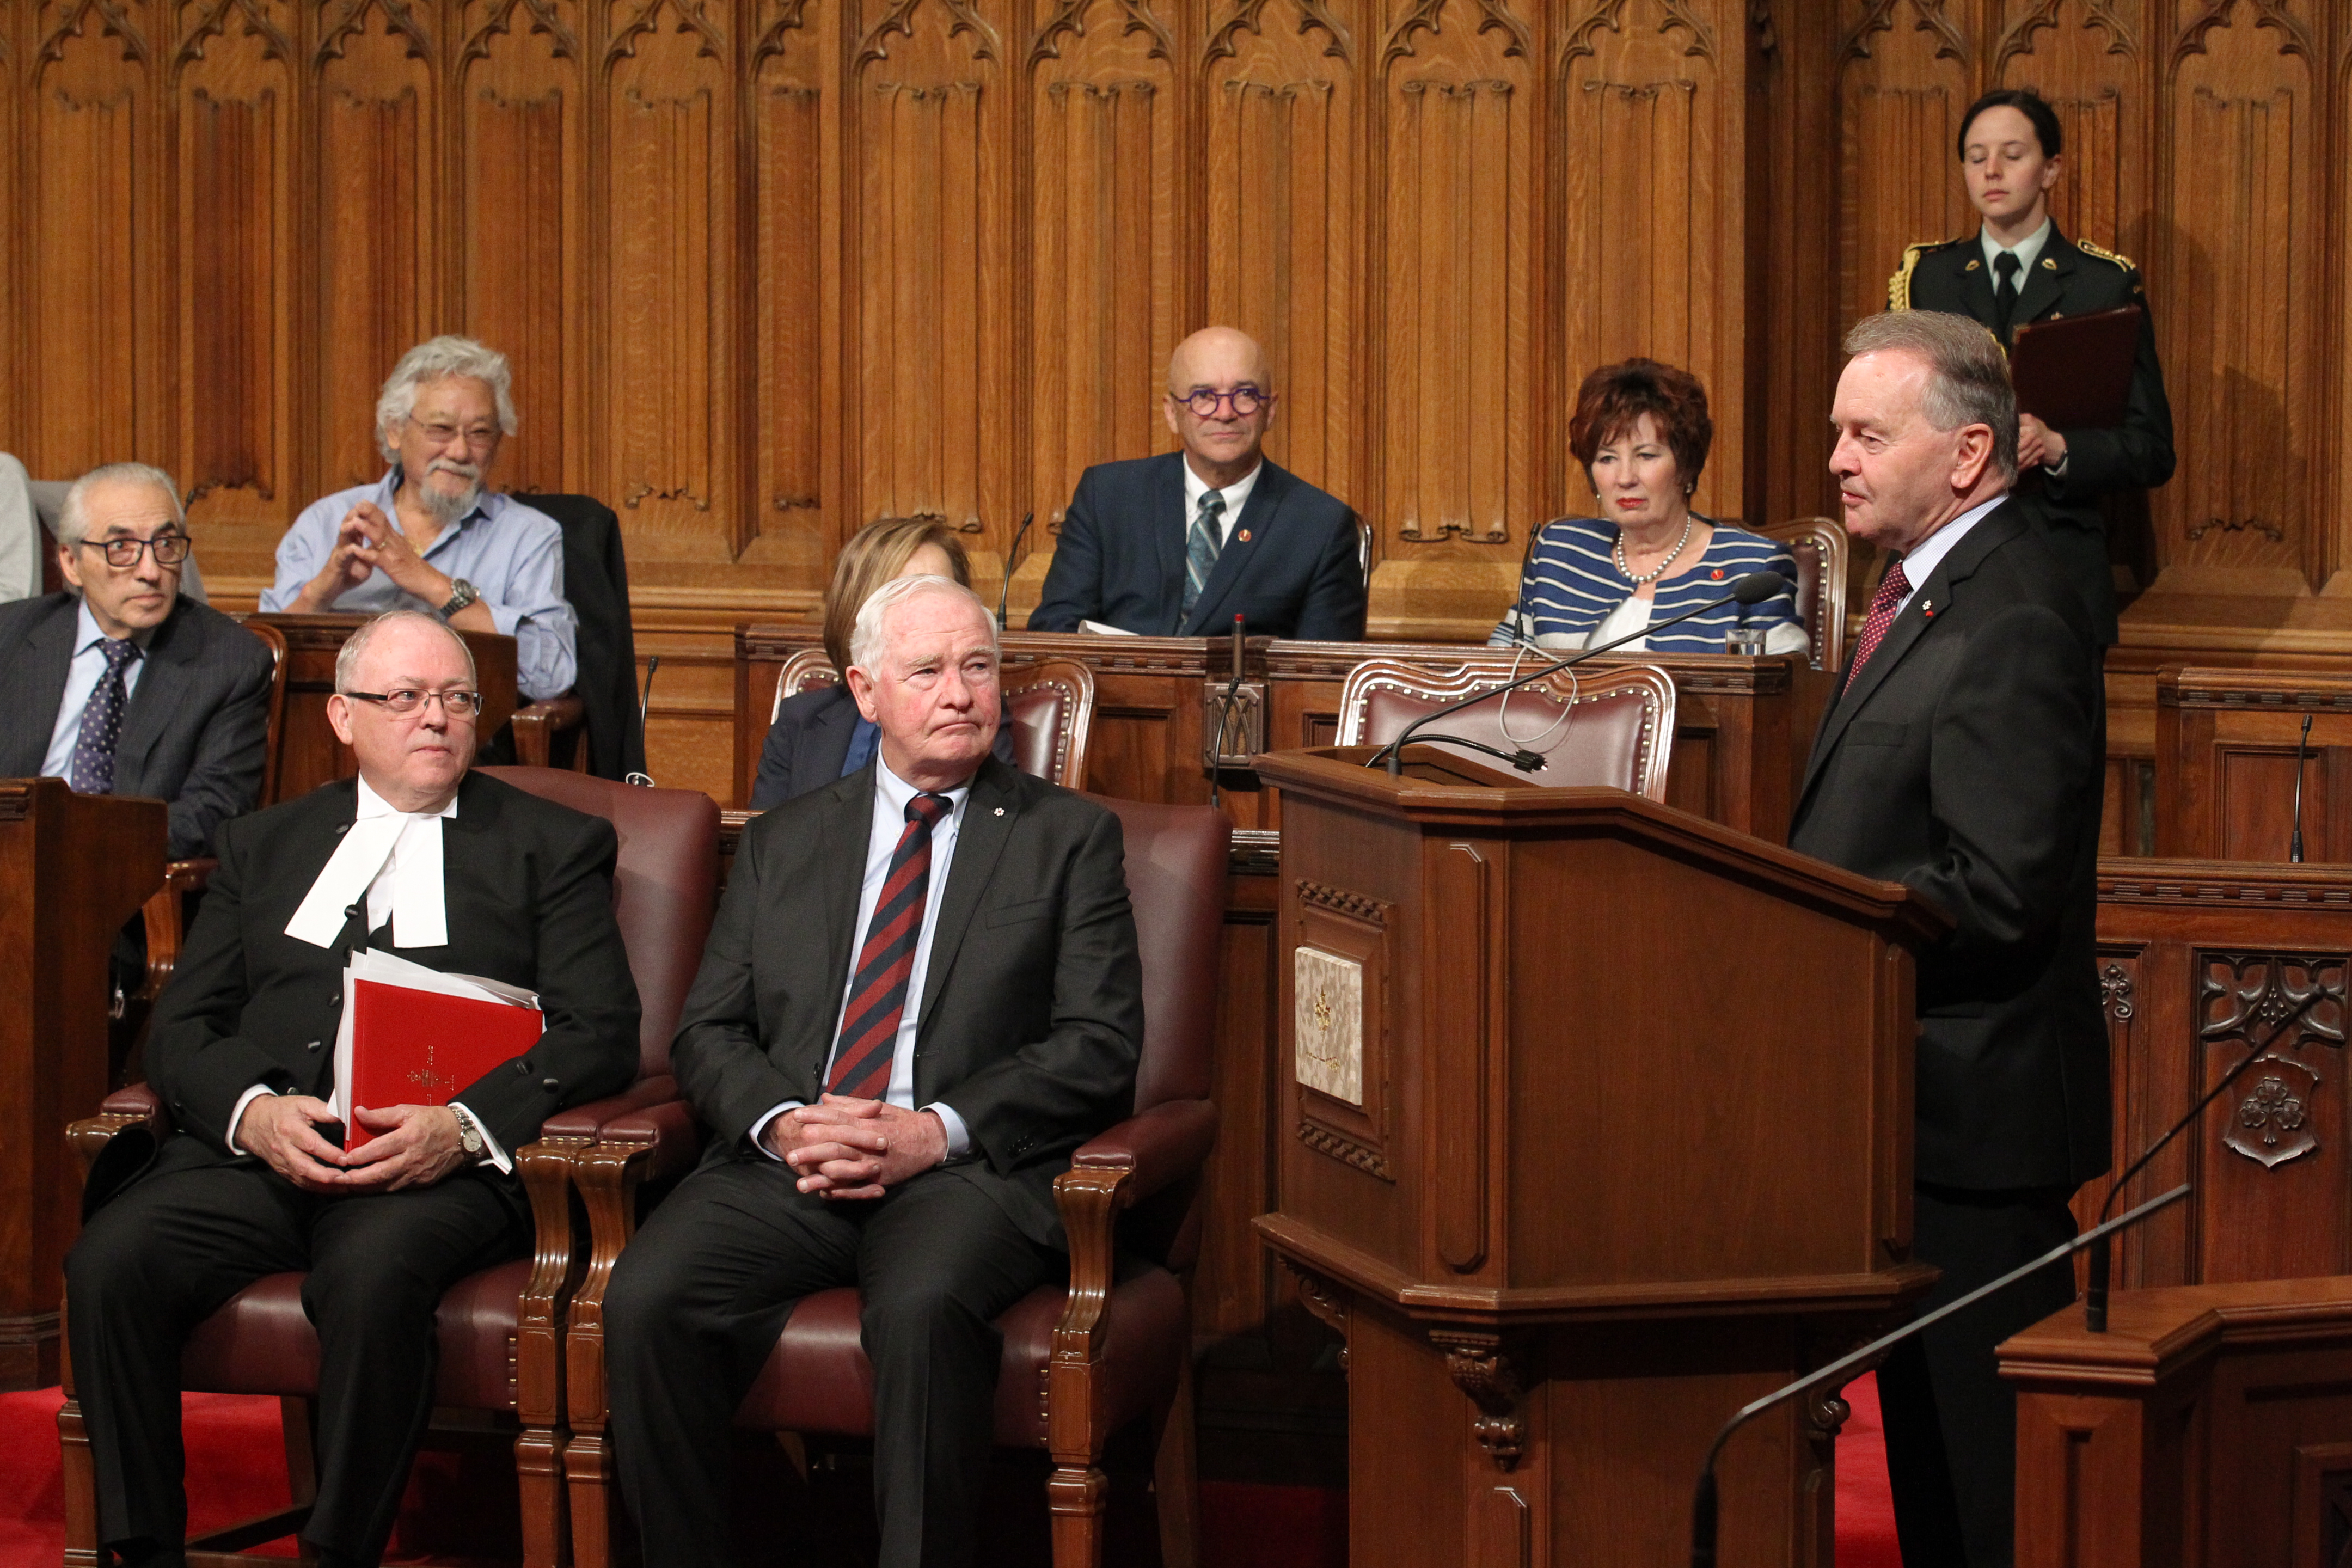 Le sénateur Joyal prononce le discours inaugural pour son évènement, le <a href='https://sencanada.ca/fr/sencaplus/nouvelles/passe-present-futur-le-symposium-du-senat-met-en-contexte-le-150e-du-canada/'>Symposium Canada 150 du Sénat</a>. Lors de cet évènement de deux jours, des leaders canadiens ont discuté de l’avenir qu’ils envisagent pour le Canada à l’occasion d’un forum de discussion portant sur des sujets comme les relations entre le Canada et les Premières Nations, le développement durable dans l’Arctique, l’influence de la Charte canadienne des droits et libertés, et l’importance de l’identité canadienne au sein de la Francophonie.